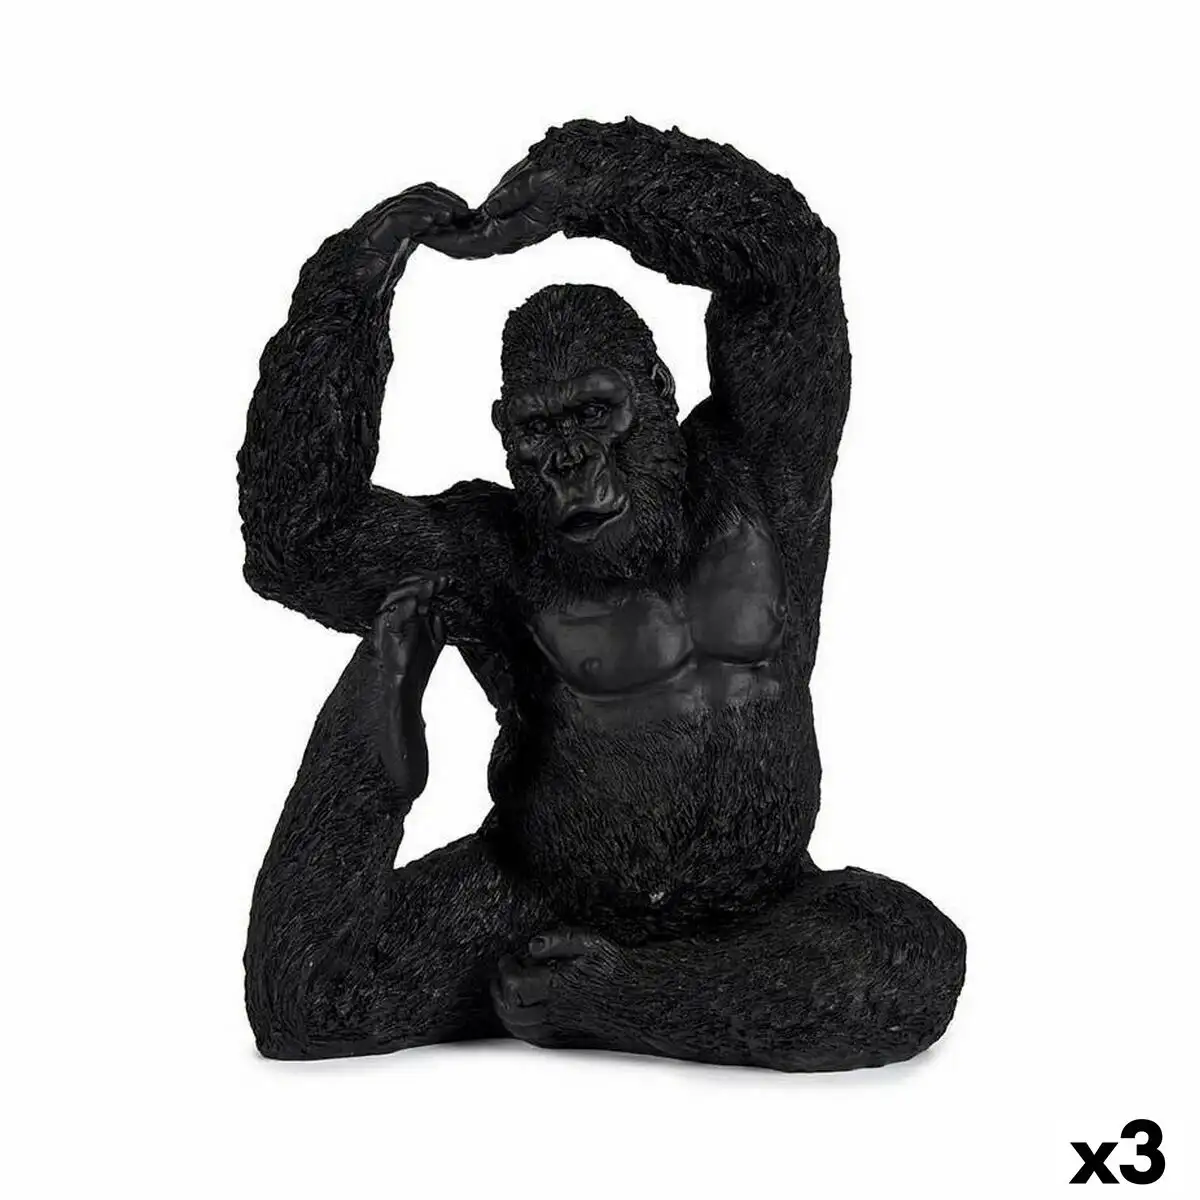 Figurine decorative yoga gorille noir 15 2 x 31 5 x 26 5 cm 3 unites _9247. DIAYTAR SENEGAL - Où Votre Shopping Prend Vie. Explorez notre boutique en ligne pour trouver des articles qui vous ressemblent et qui ajoutent de l'éclat à votre quotidien.